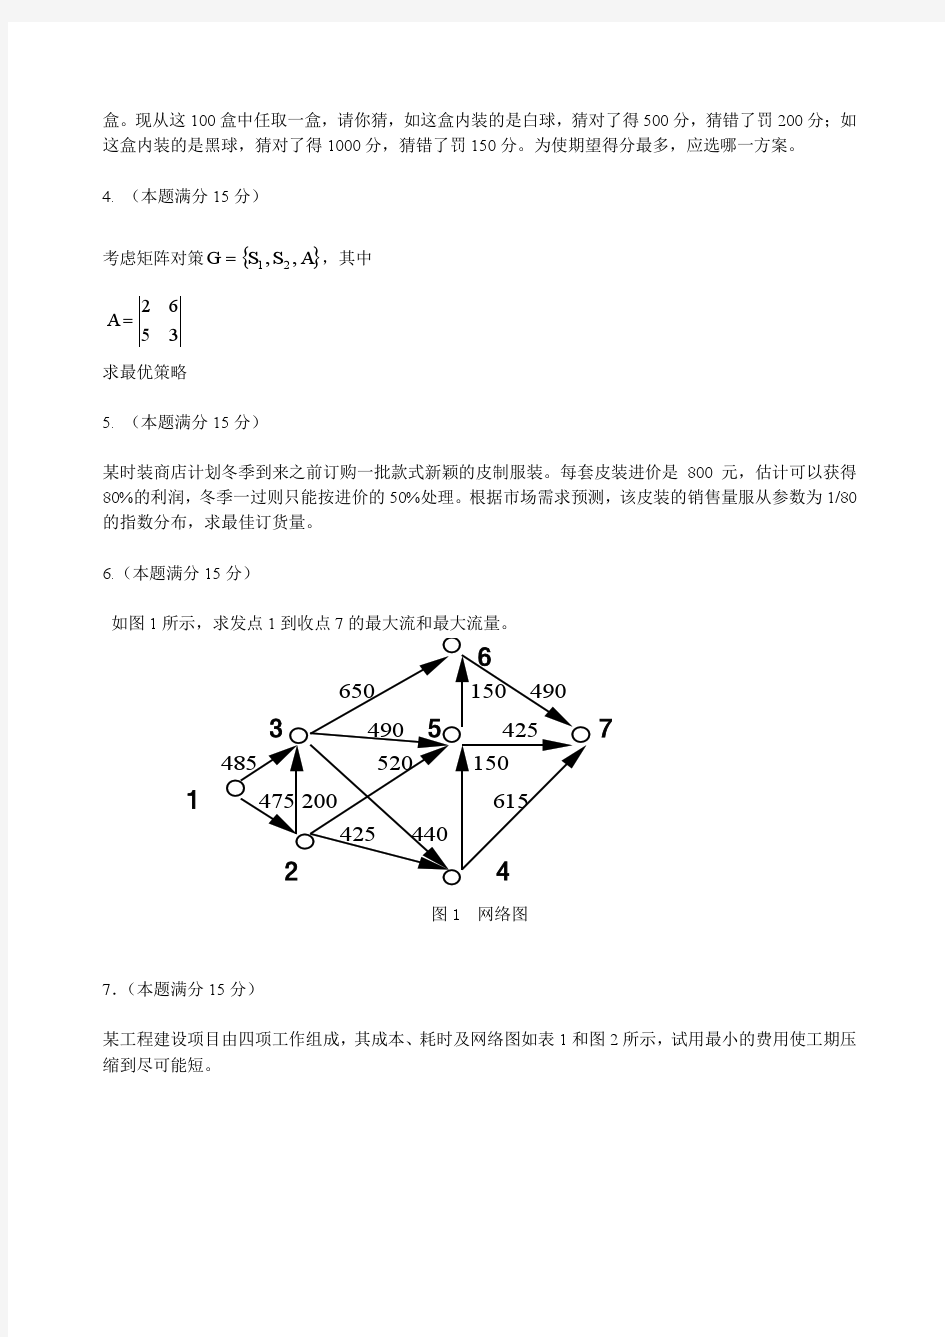 2013年上海海事大学运筹学试卷考研真题.pdf